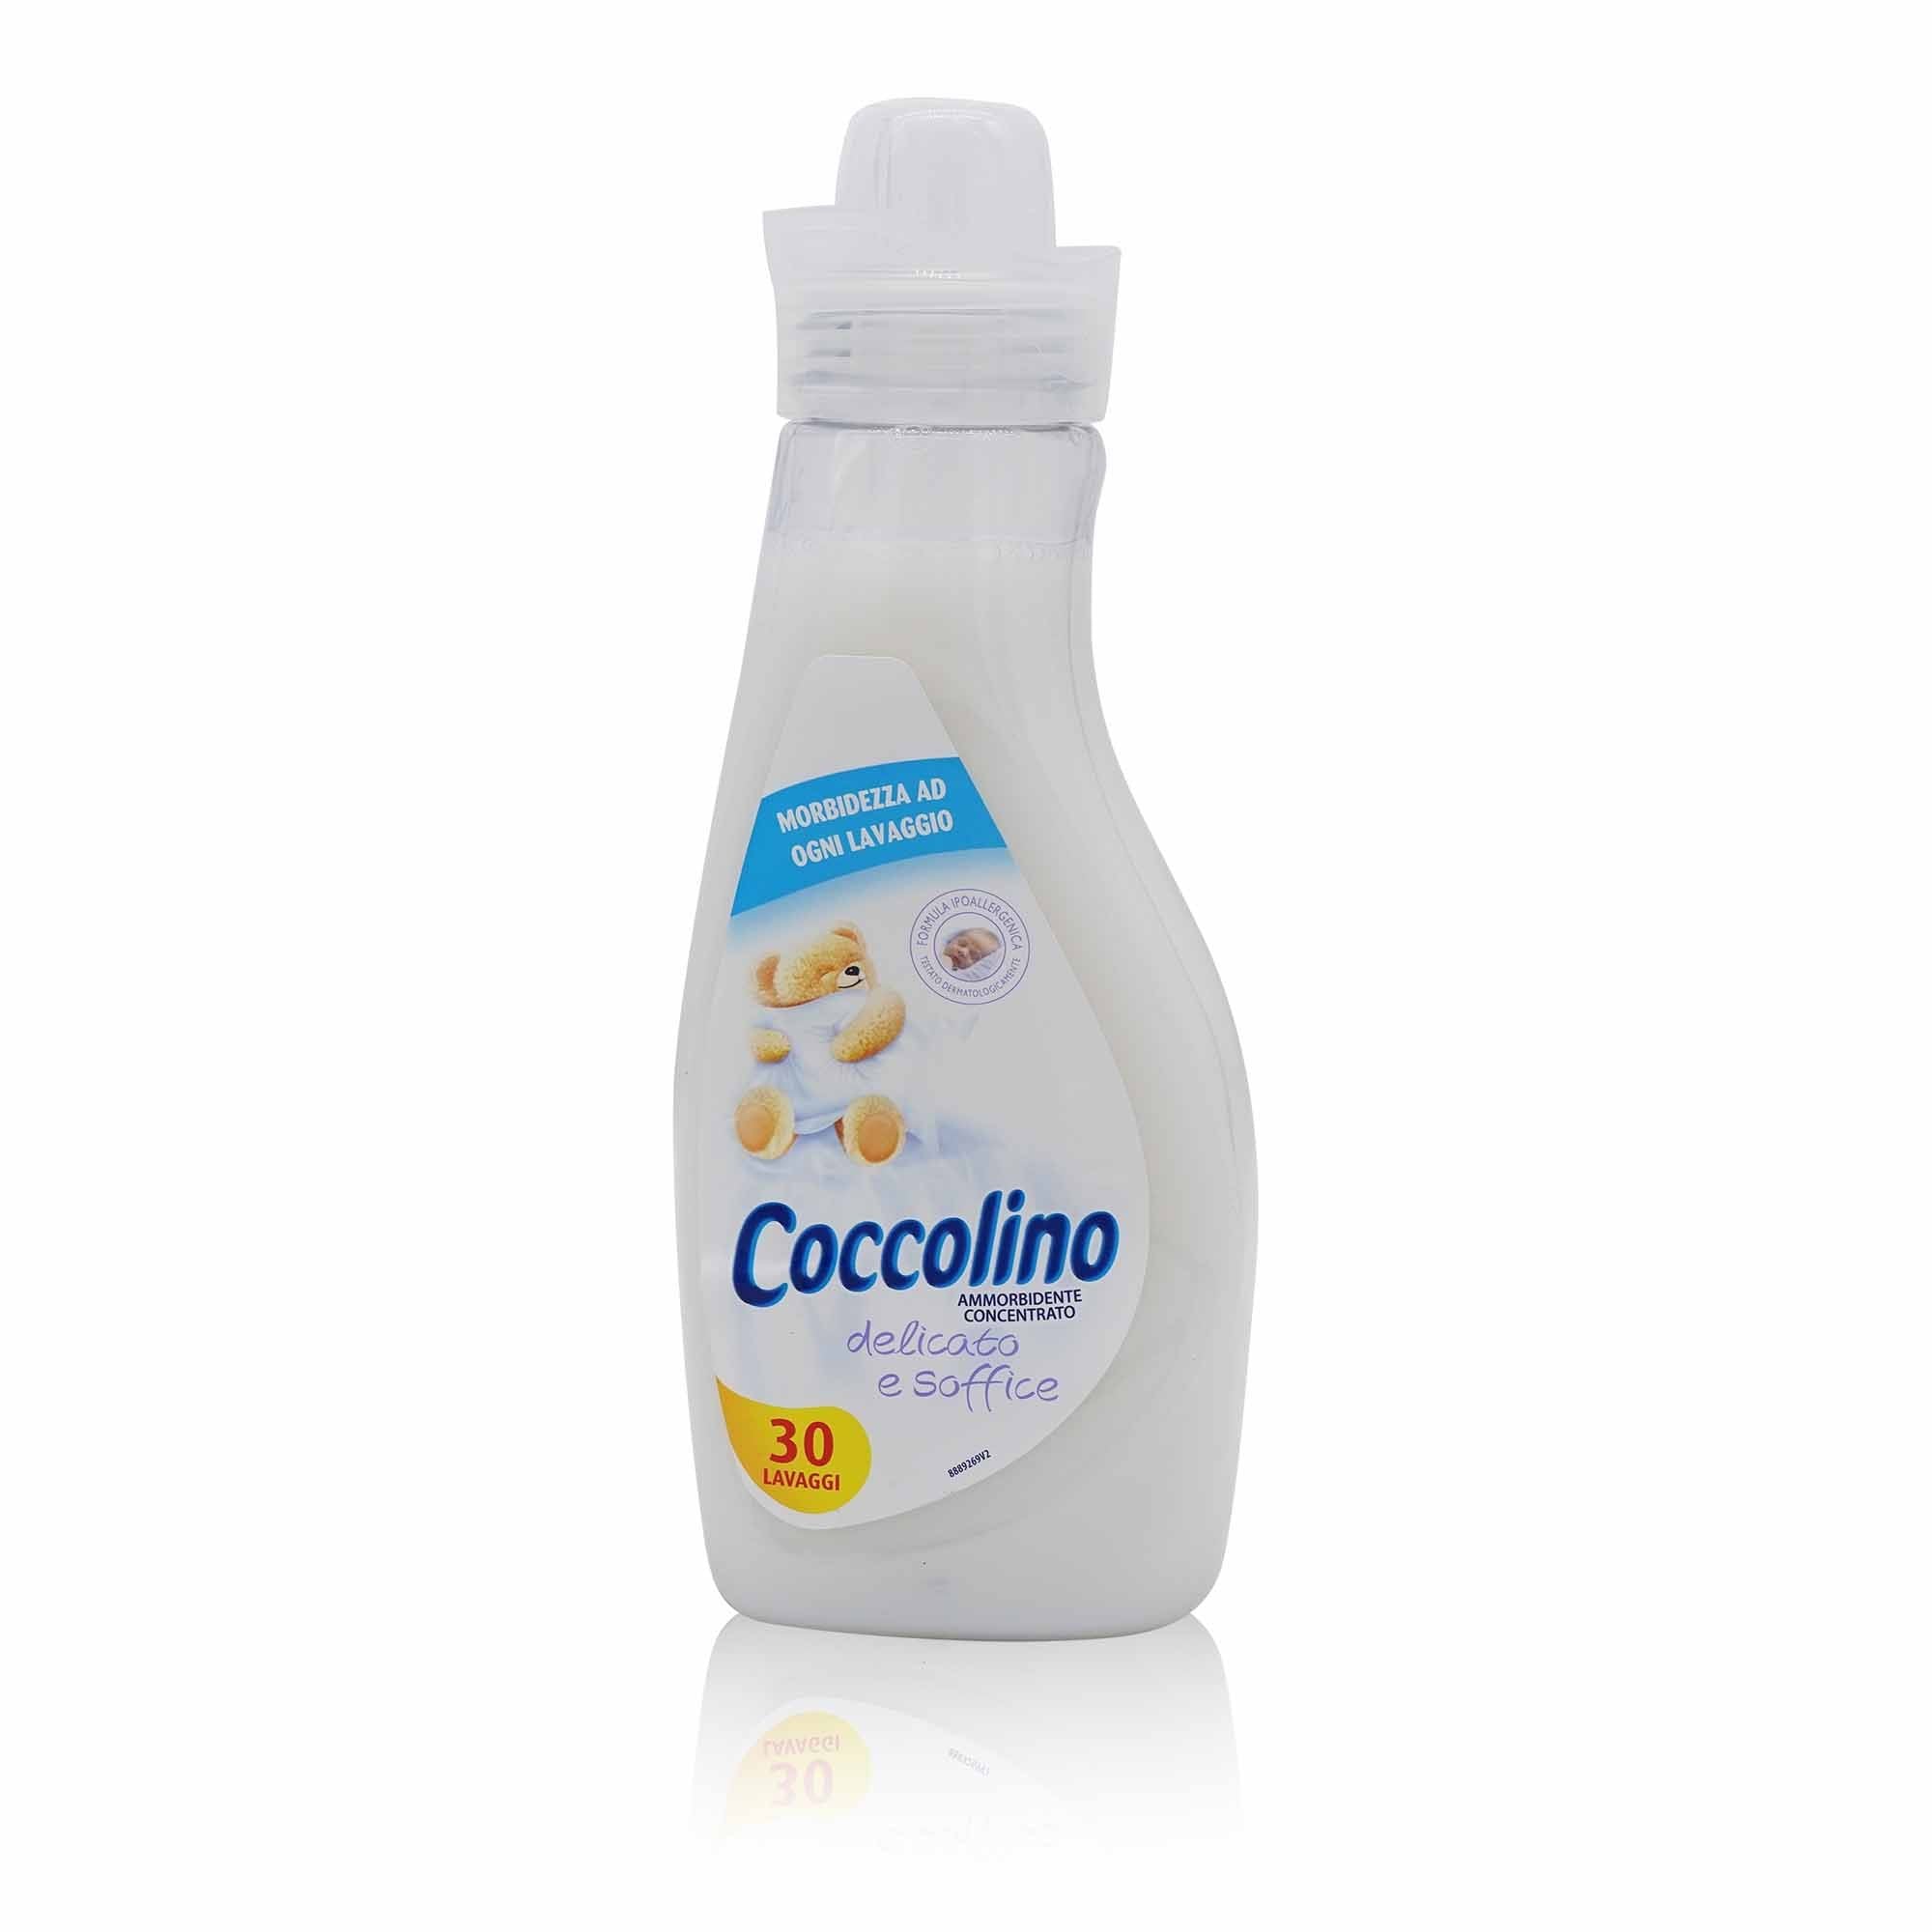 COCCOLINO Ammorbidente delicato e soffice – Weichspüler weich & soft - 0,75l - italienisch-einkaufen.de